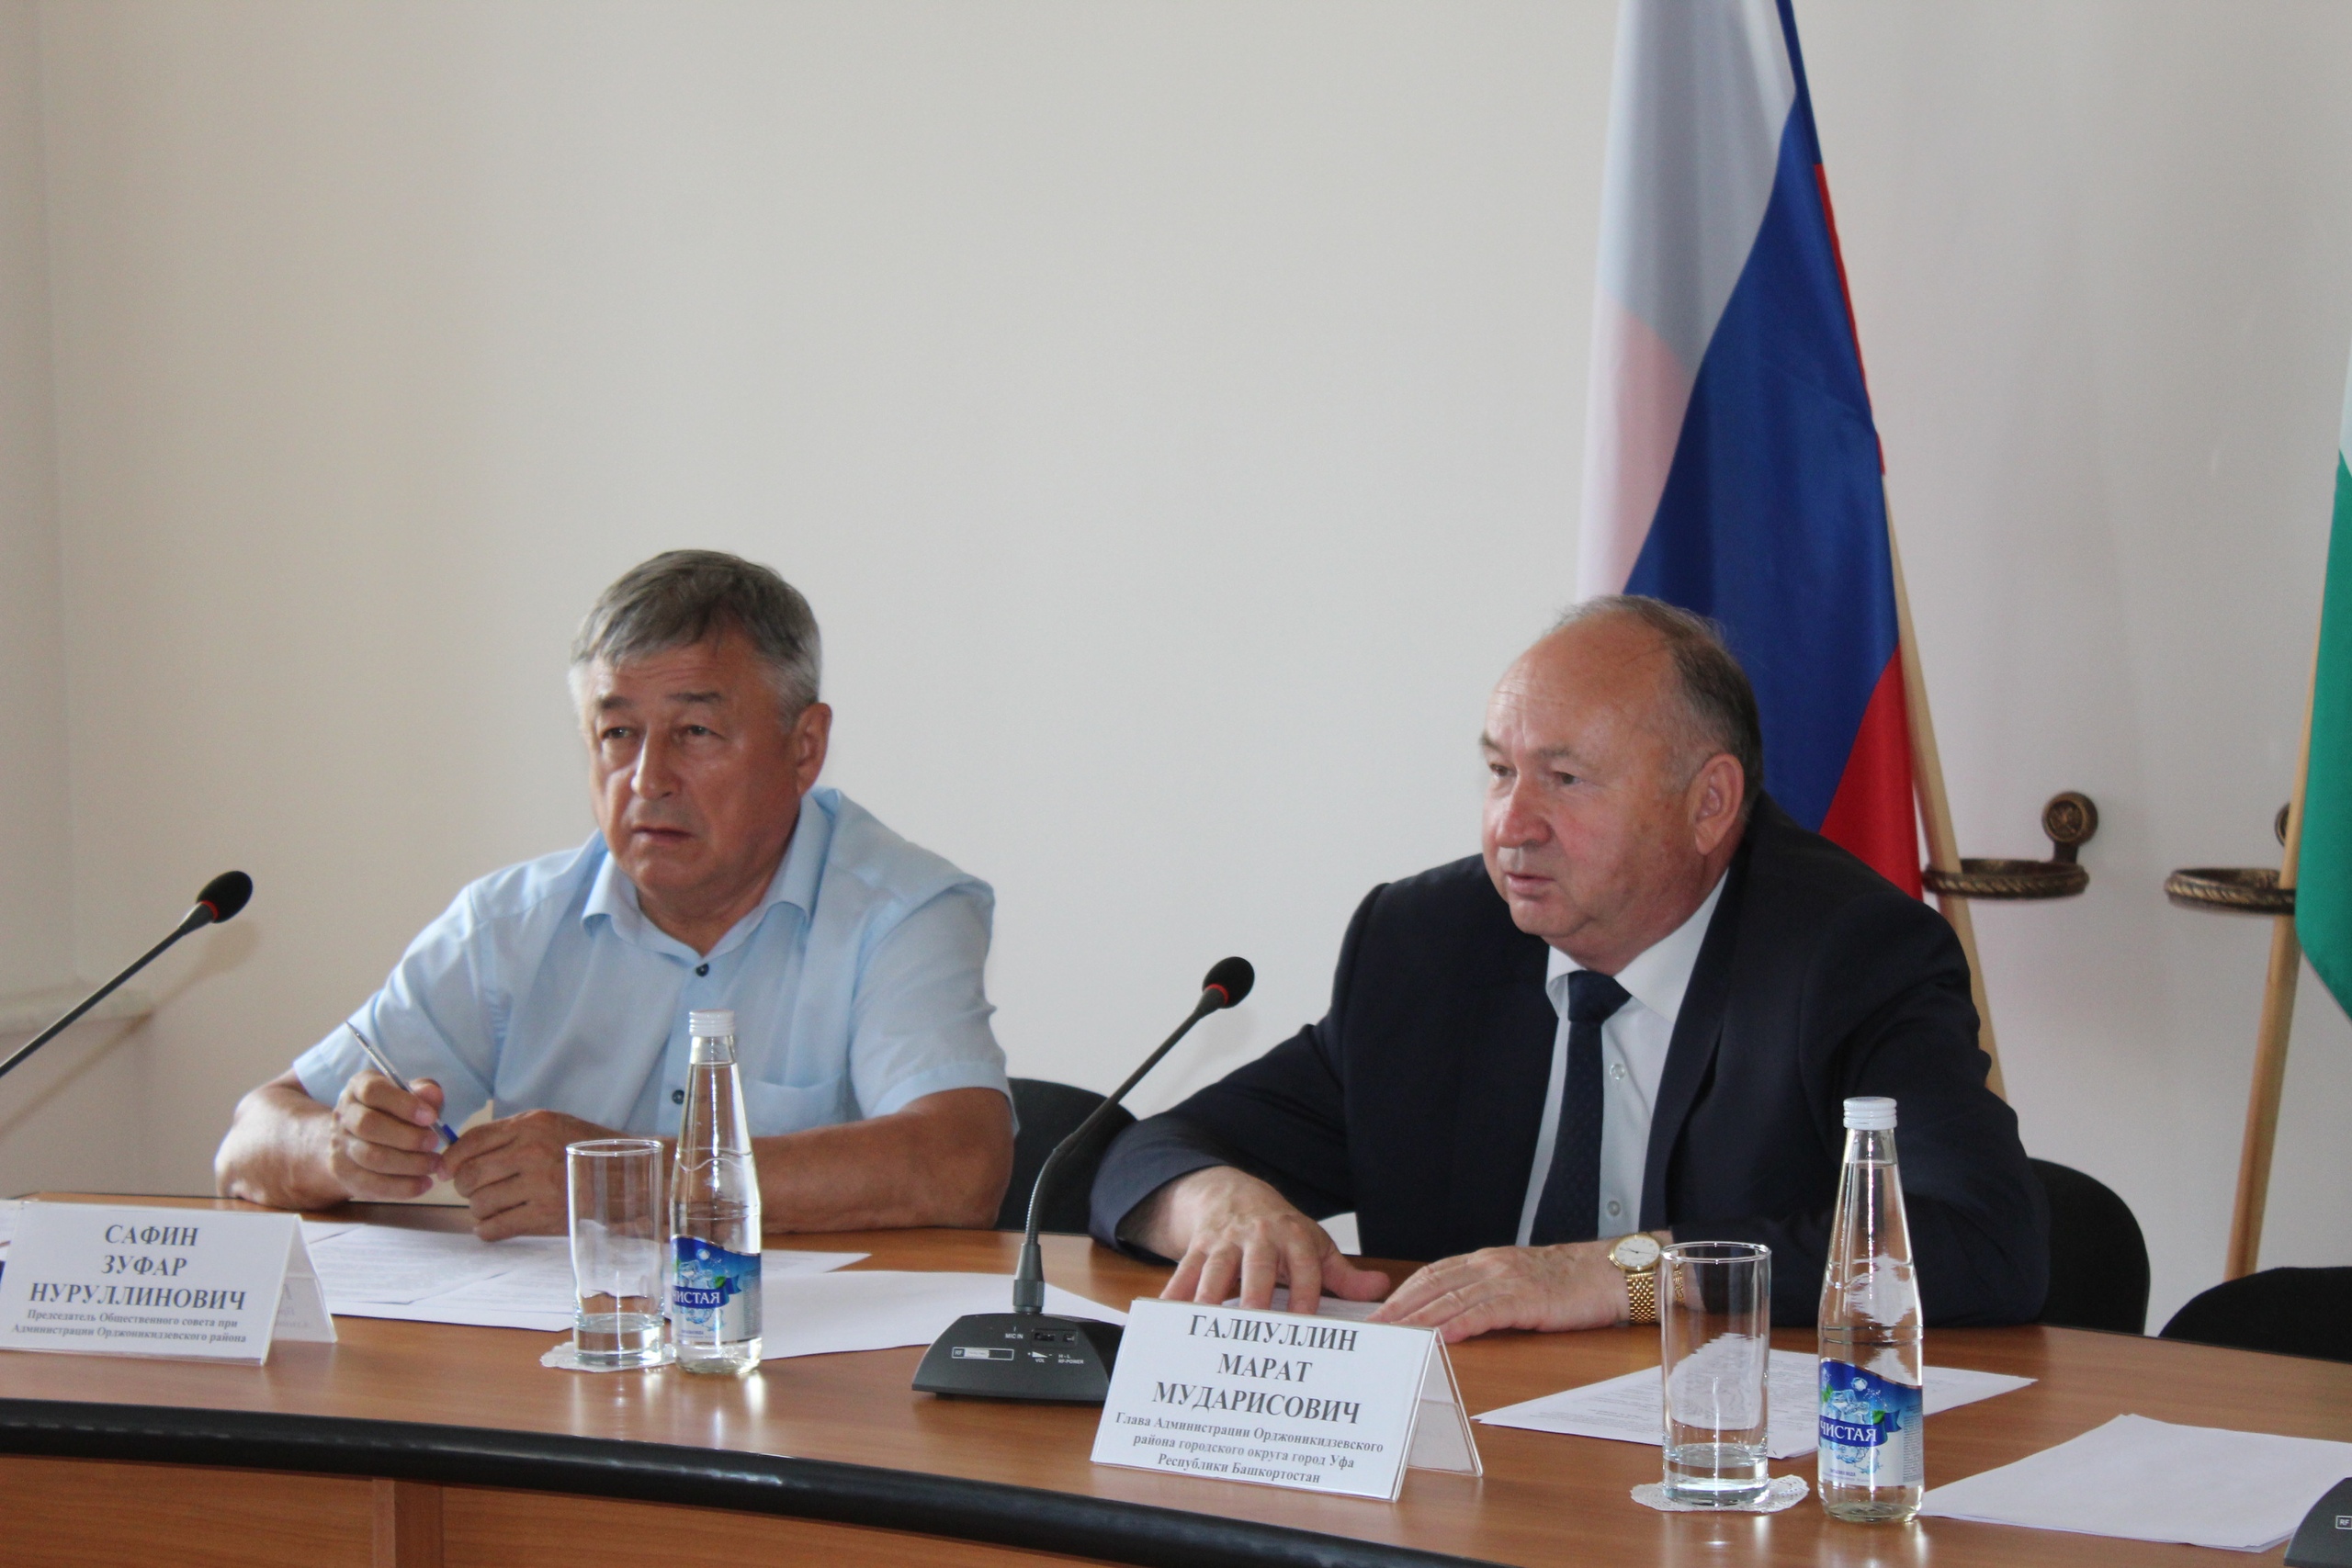 11 июля 2018 года состоялось заседание Общественного совета при Администрации Орджоникидзевского района ГО г. Уфа РБ.